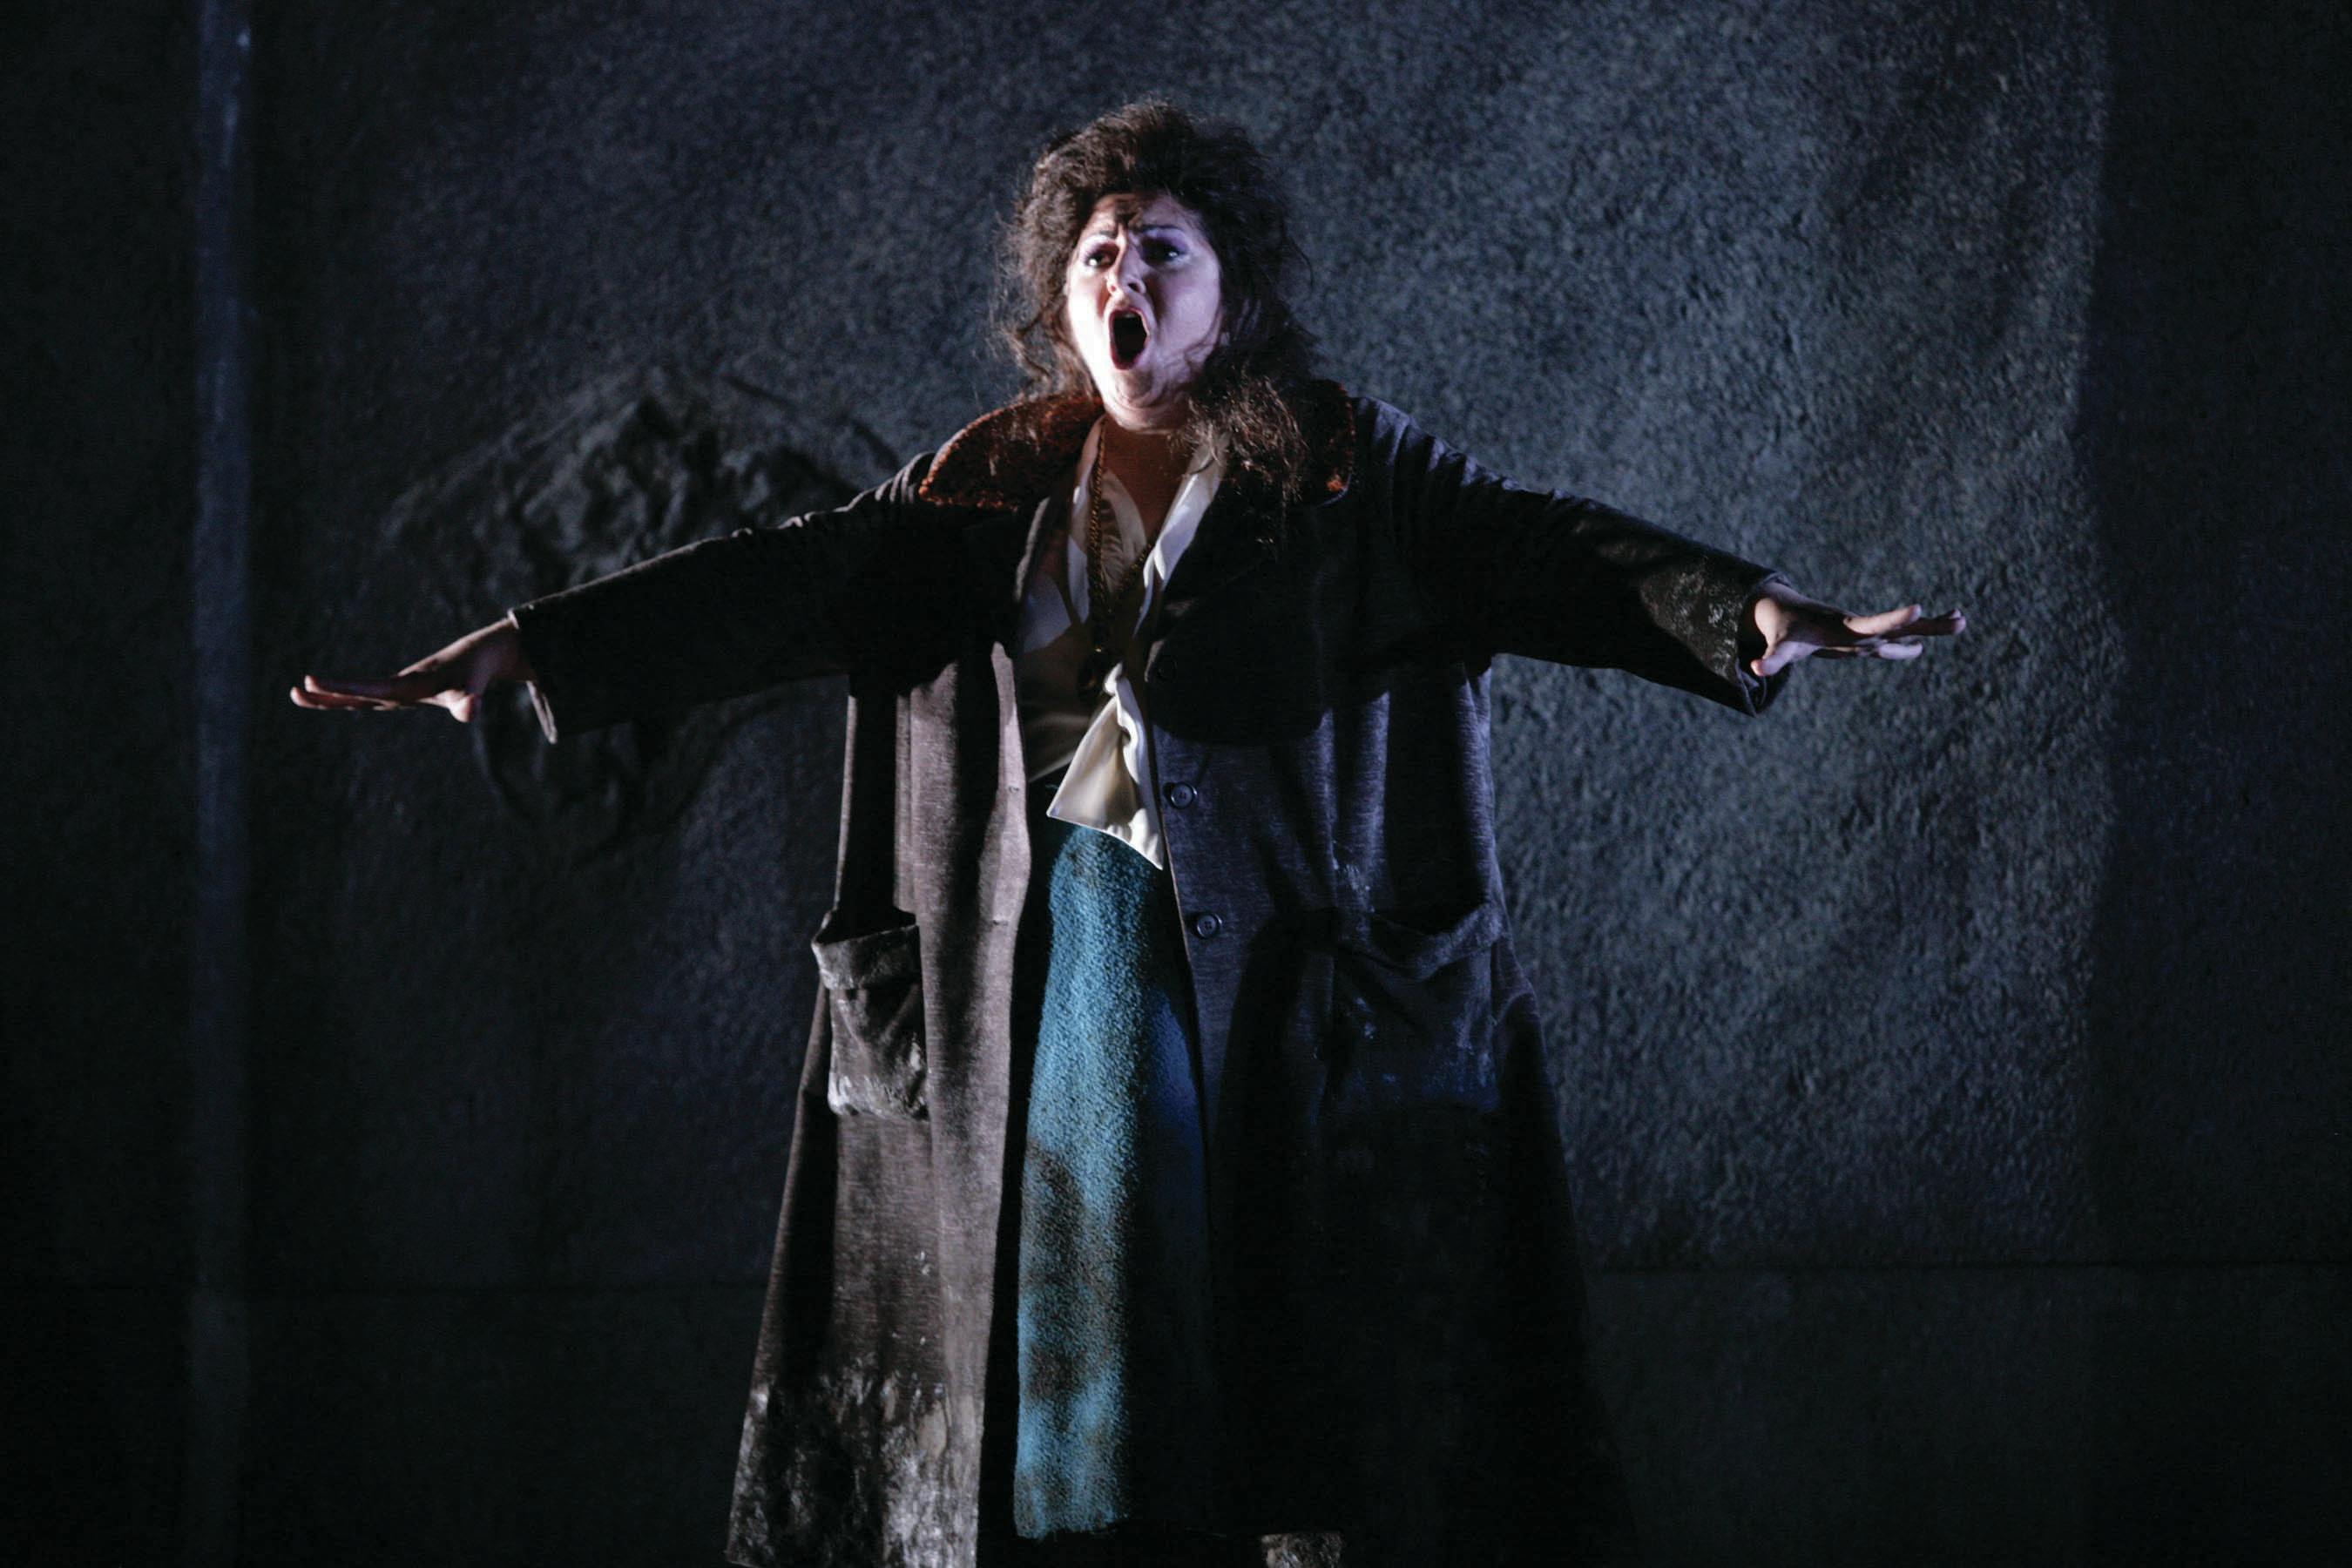 Goerke as Ortrud in HGO's Lohengrin in 2009